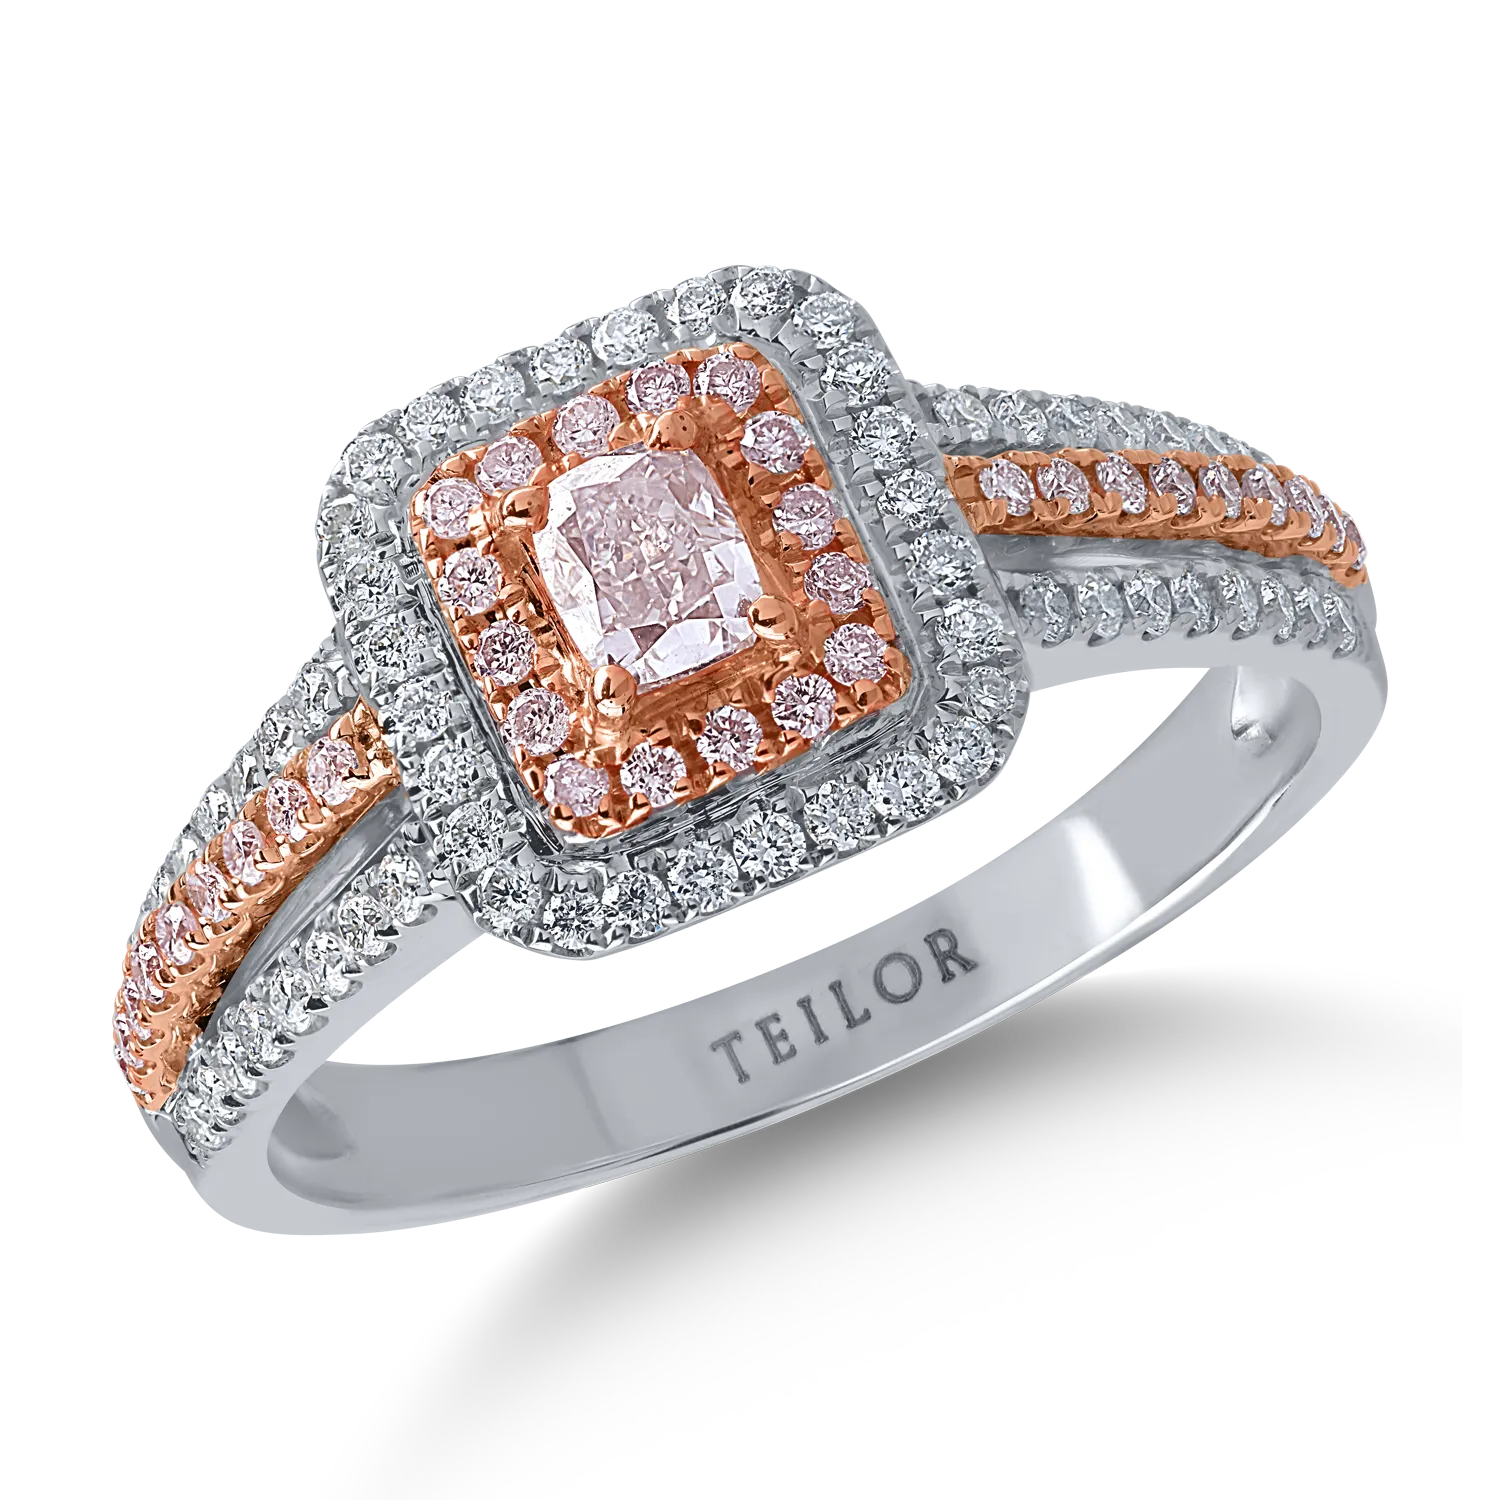 Pierścionek z różowo-białego złota z różowymi diamentami o masie 0.43ct i bezbarwnymi diamentami o masie 0.3ct